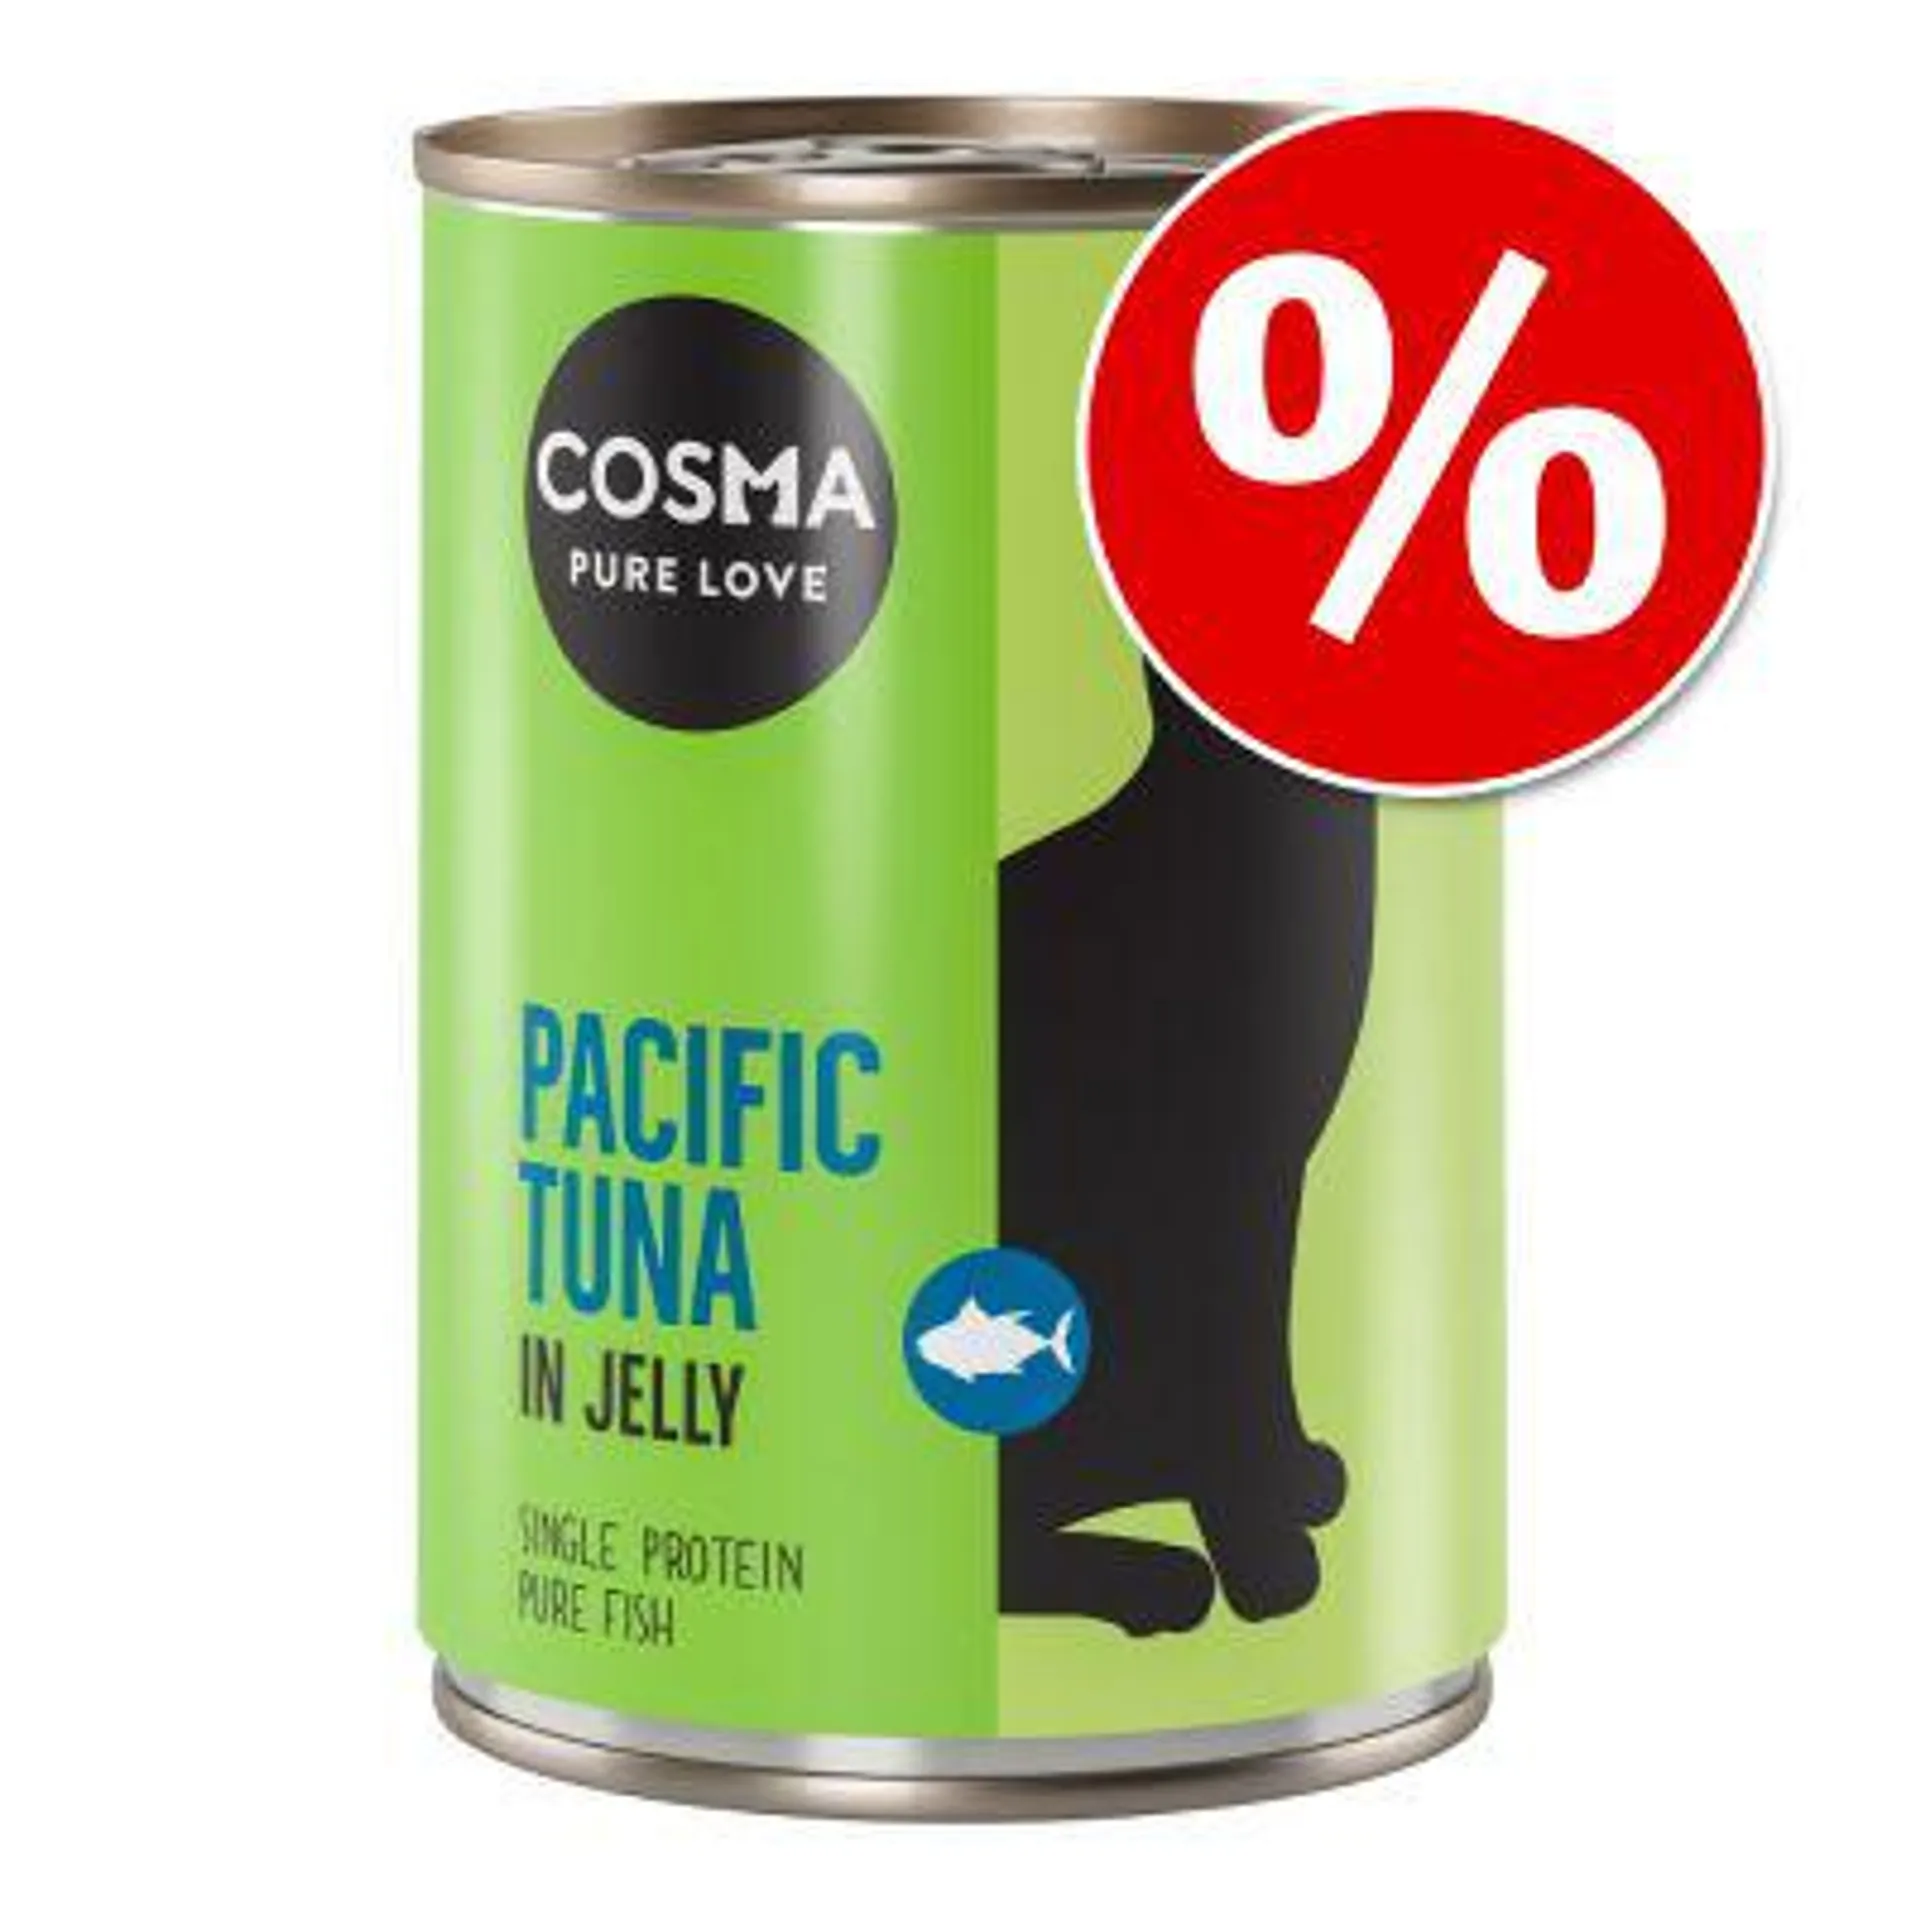 6 x 400g Cosma Original & Asia Wet Cat Food - Special Price!*